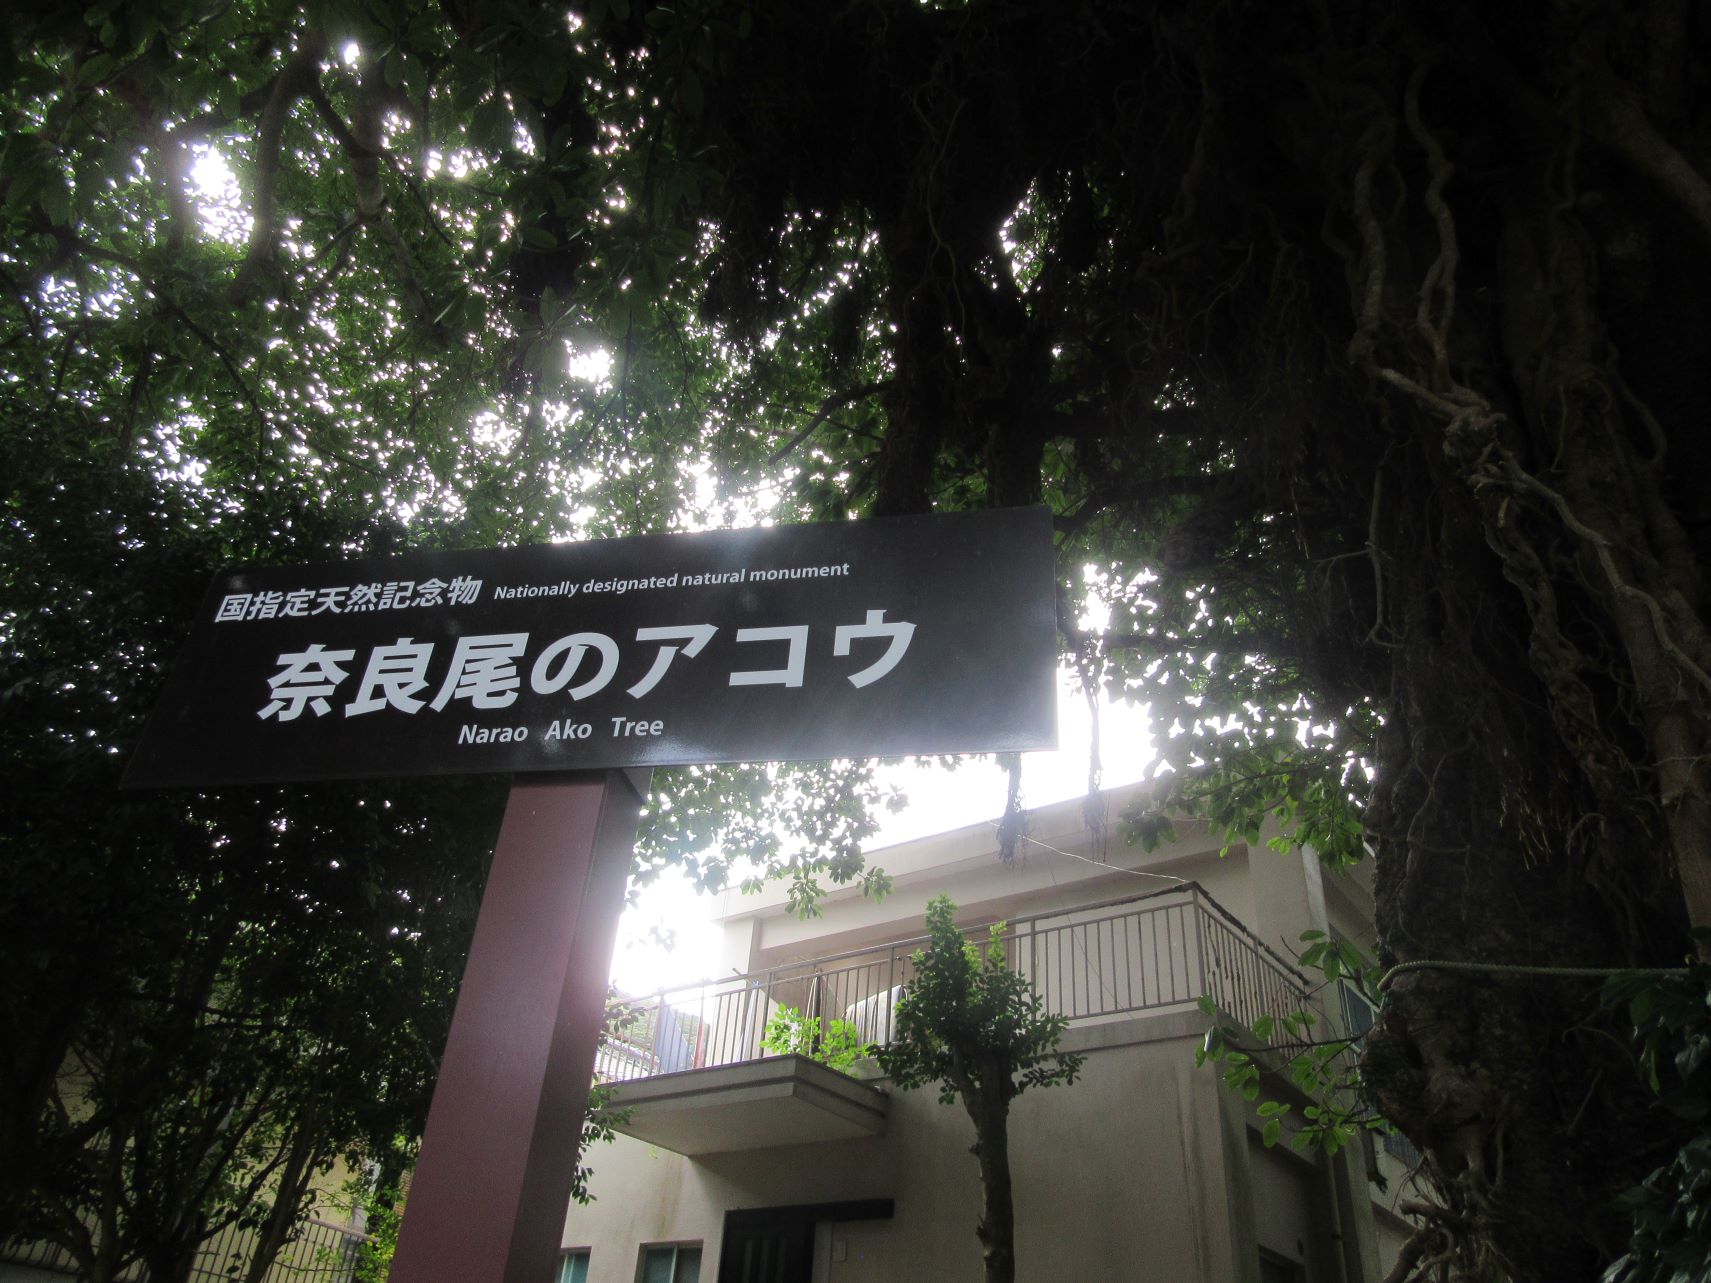 長崎県南松浦郡新上五島町の奈良尾神社の『奈良尾のアコウ』の看板。